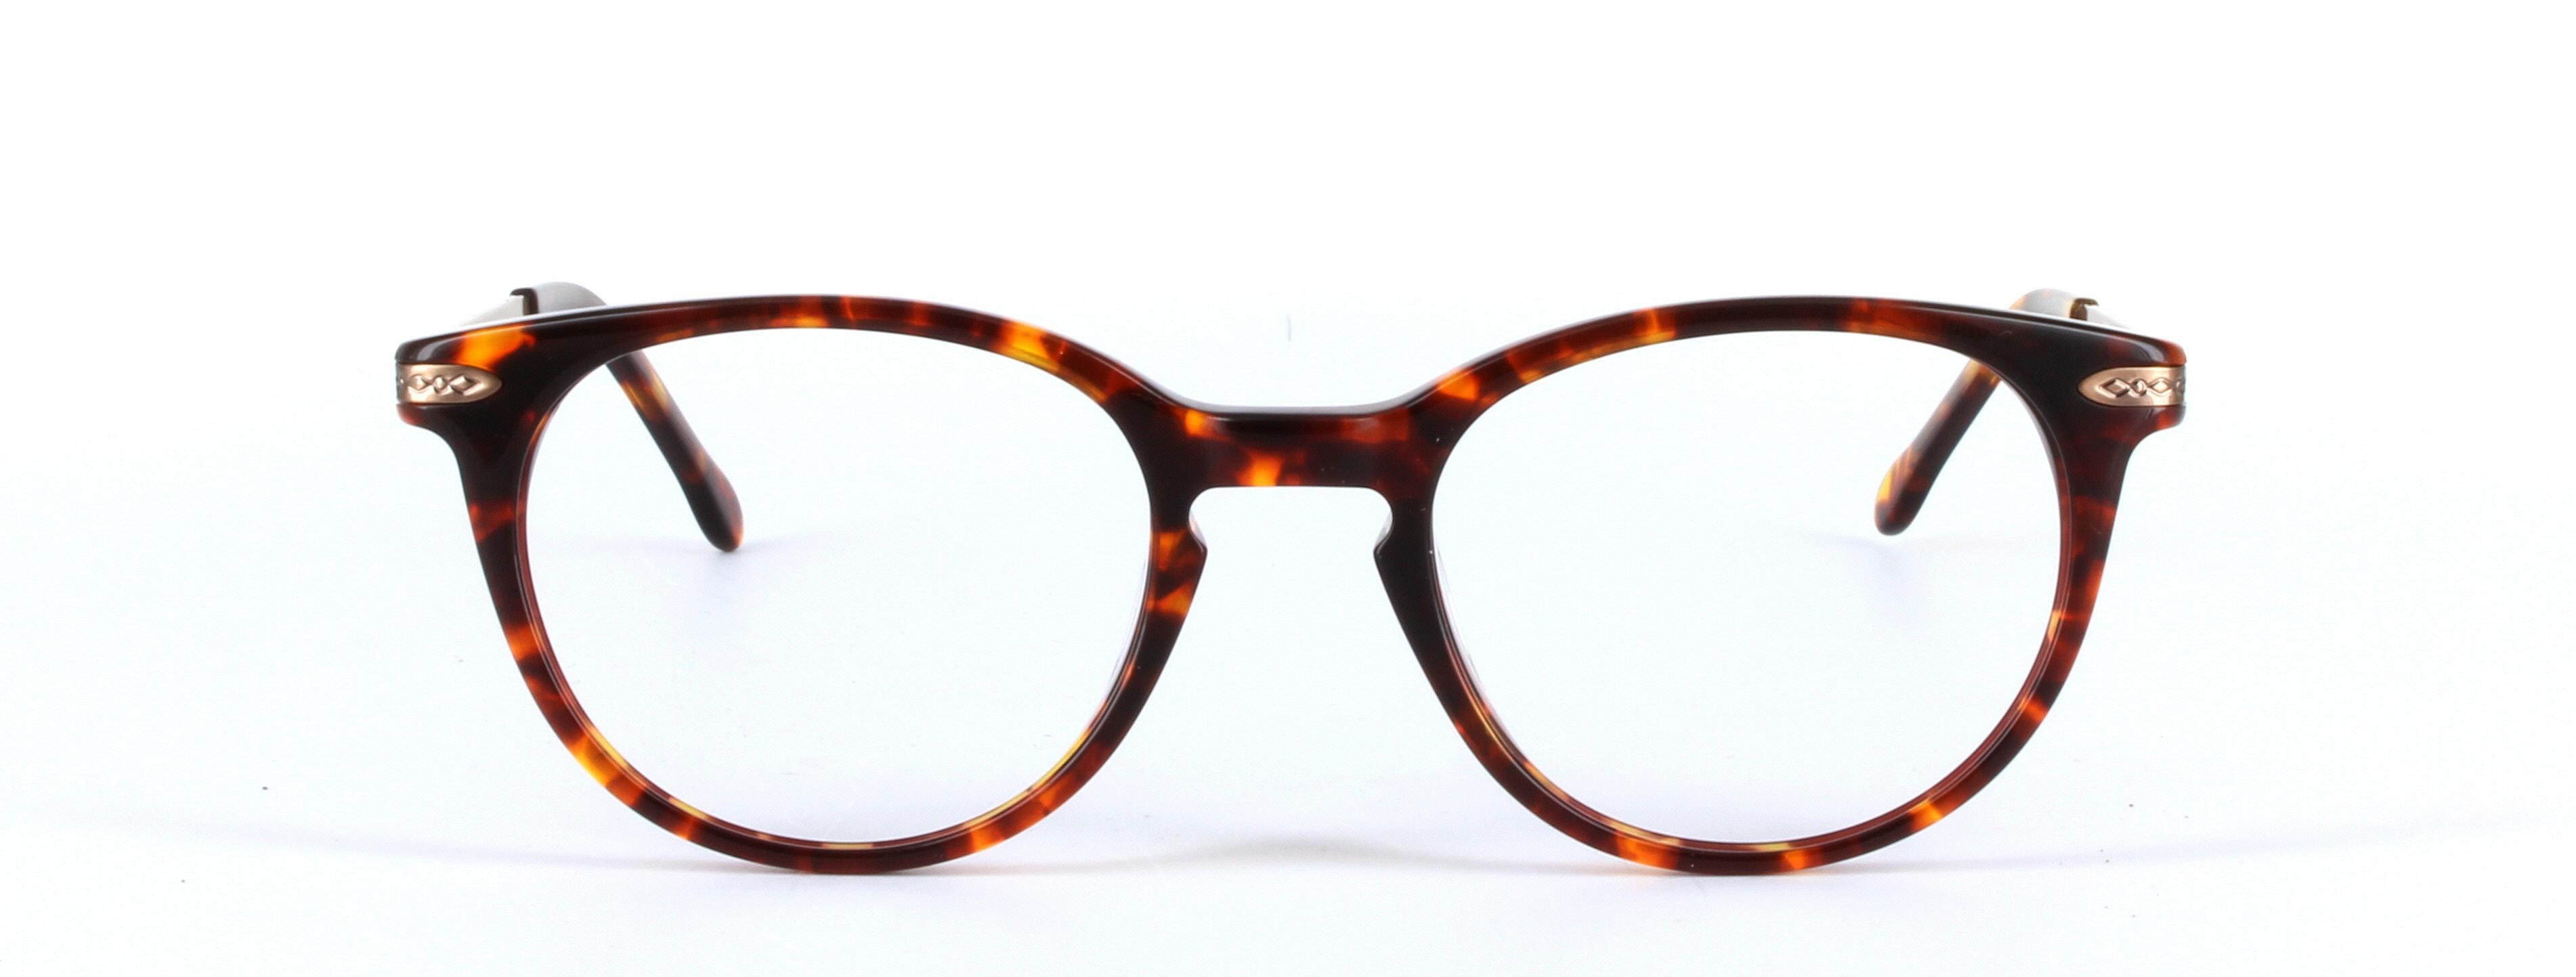 Amanda Tortoise Full Rim Round Plastic Glasses - Image View 5